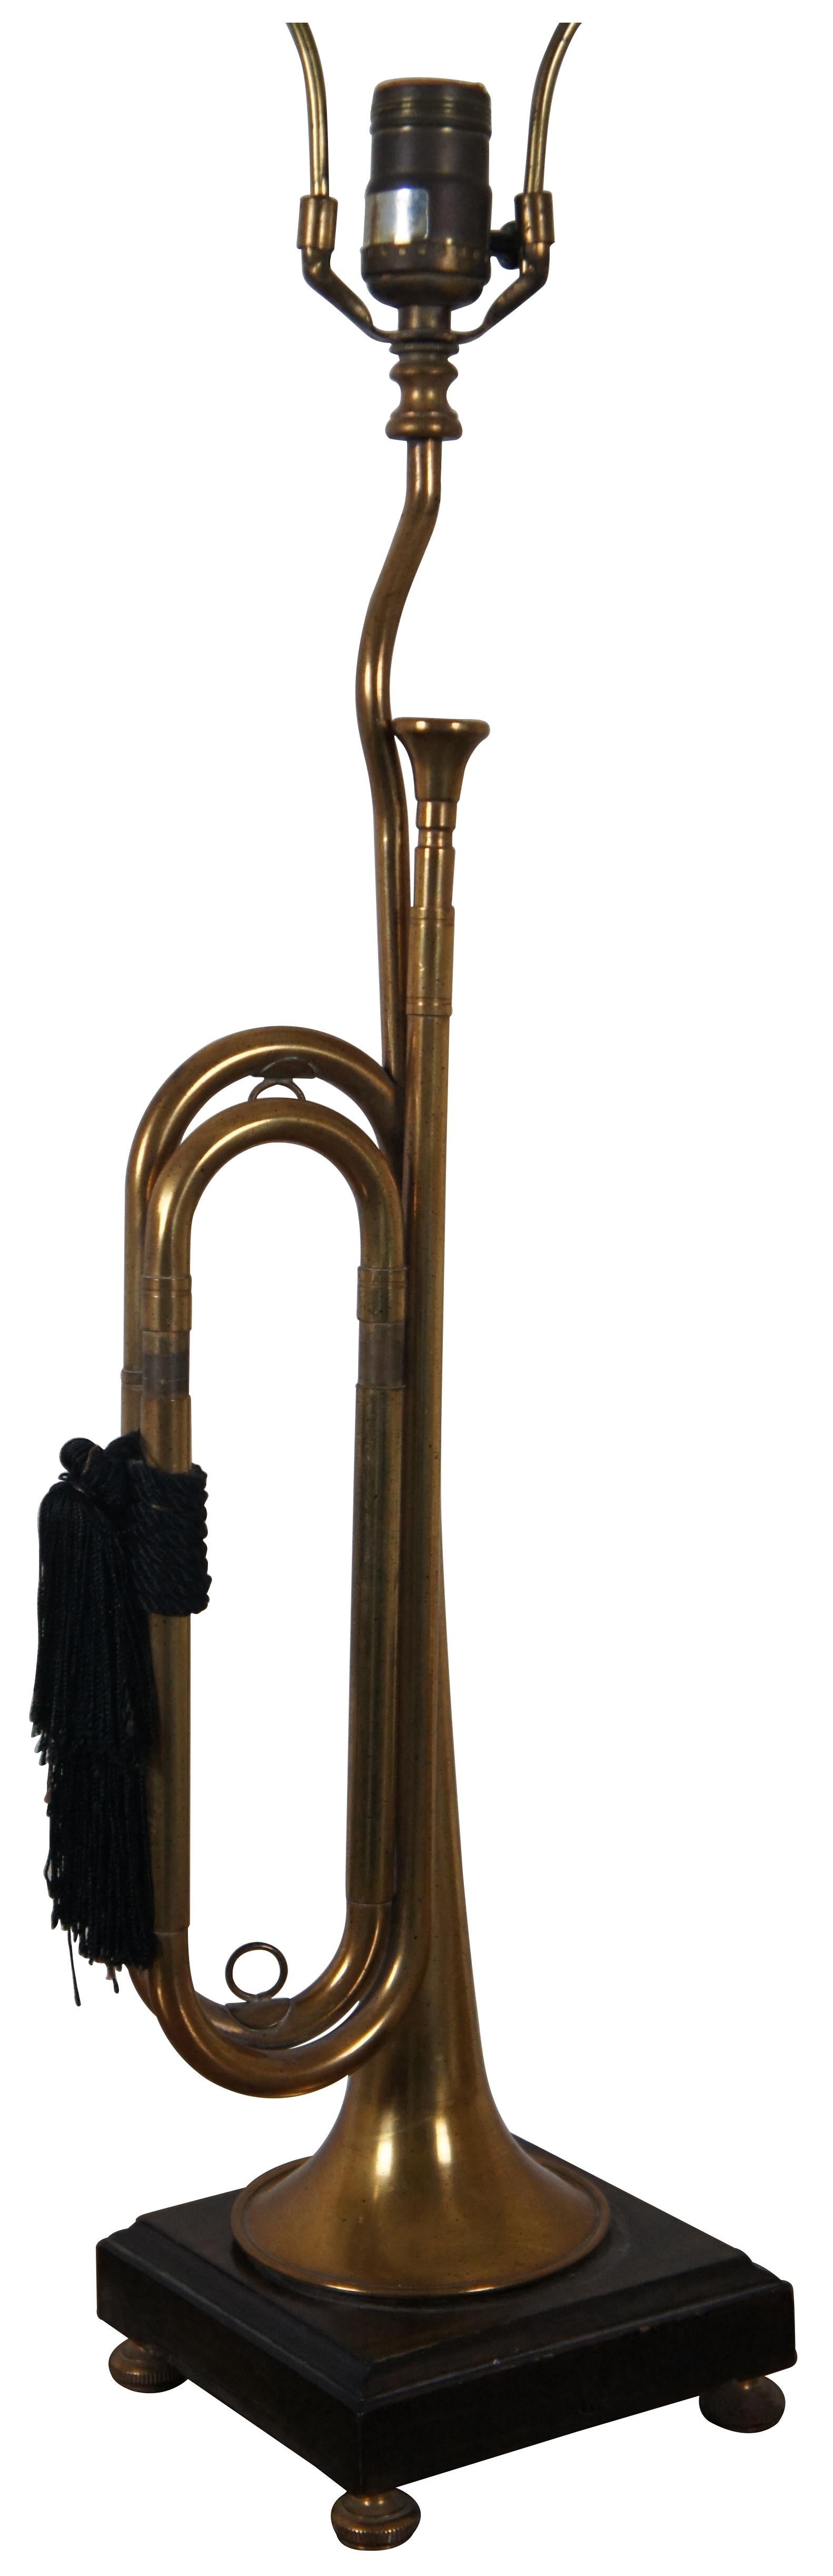 Vintage Frederick Cooper Tischlampe aus Messing in Form eines mit schwarzen Quasten verzierten Signalhorns, auf einem dunklen Holzsockel stehend, mit ringförmigem Abschluss.

6,5